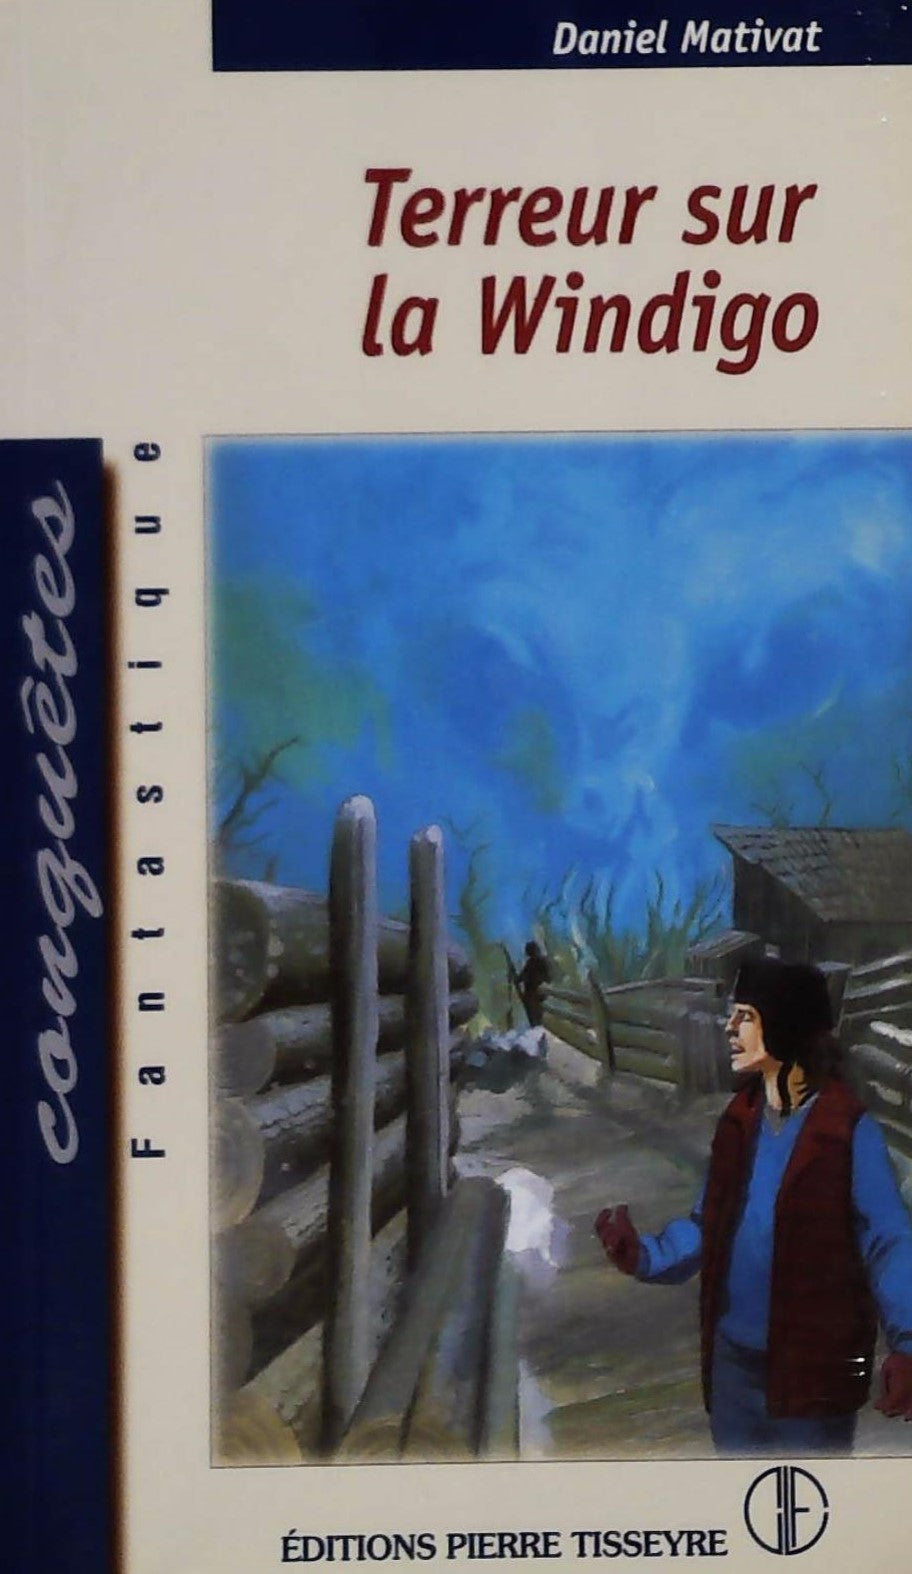 Livre ISBN 2890516687 Conquêtes # 68 : Terreur sur la Windigo (Daniel Mativat)